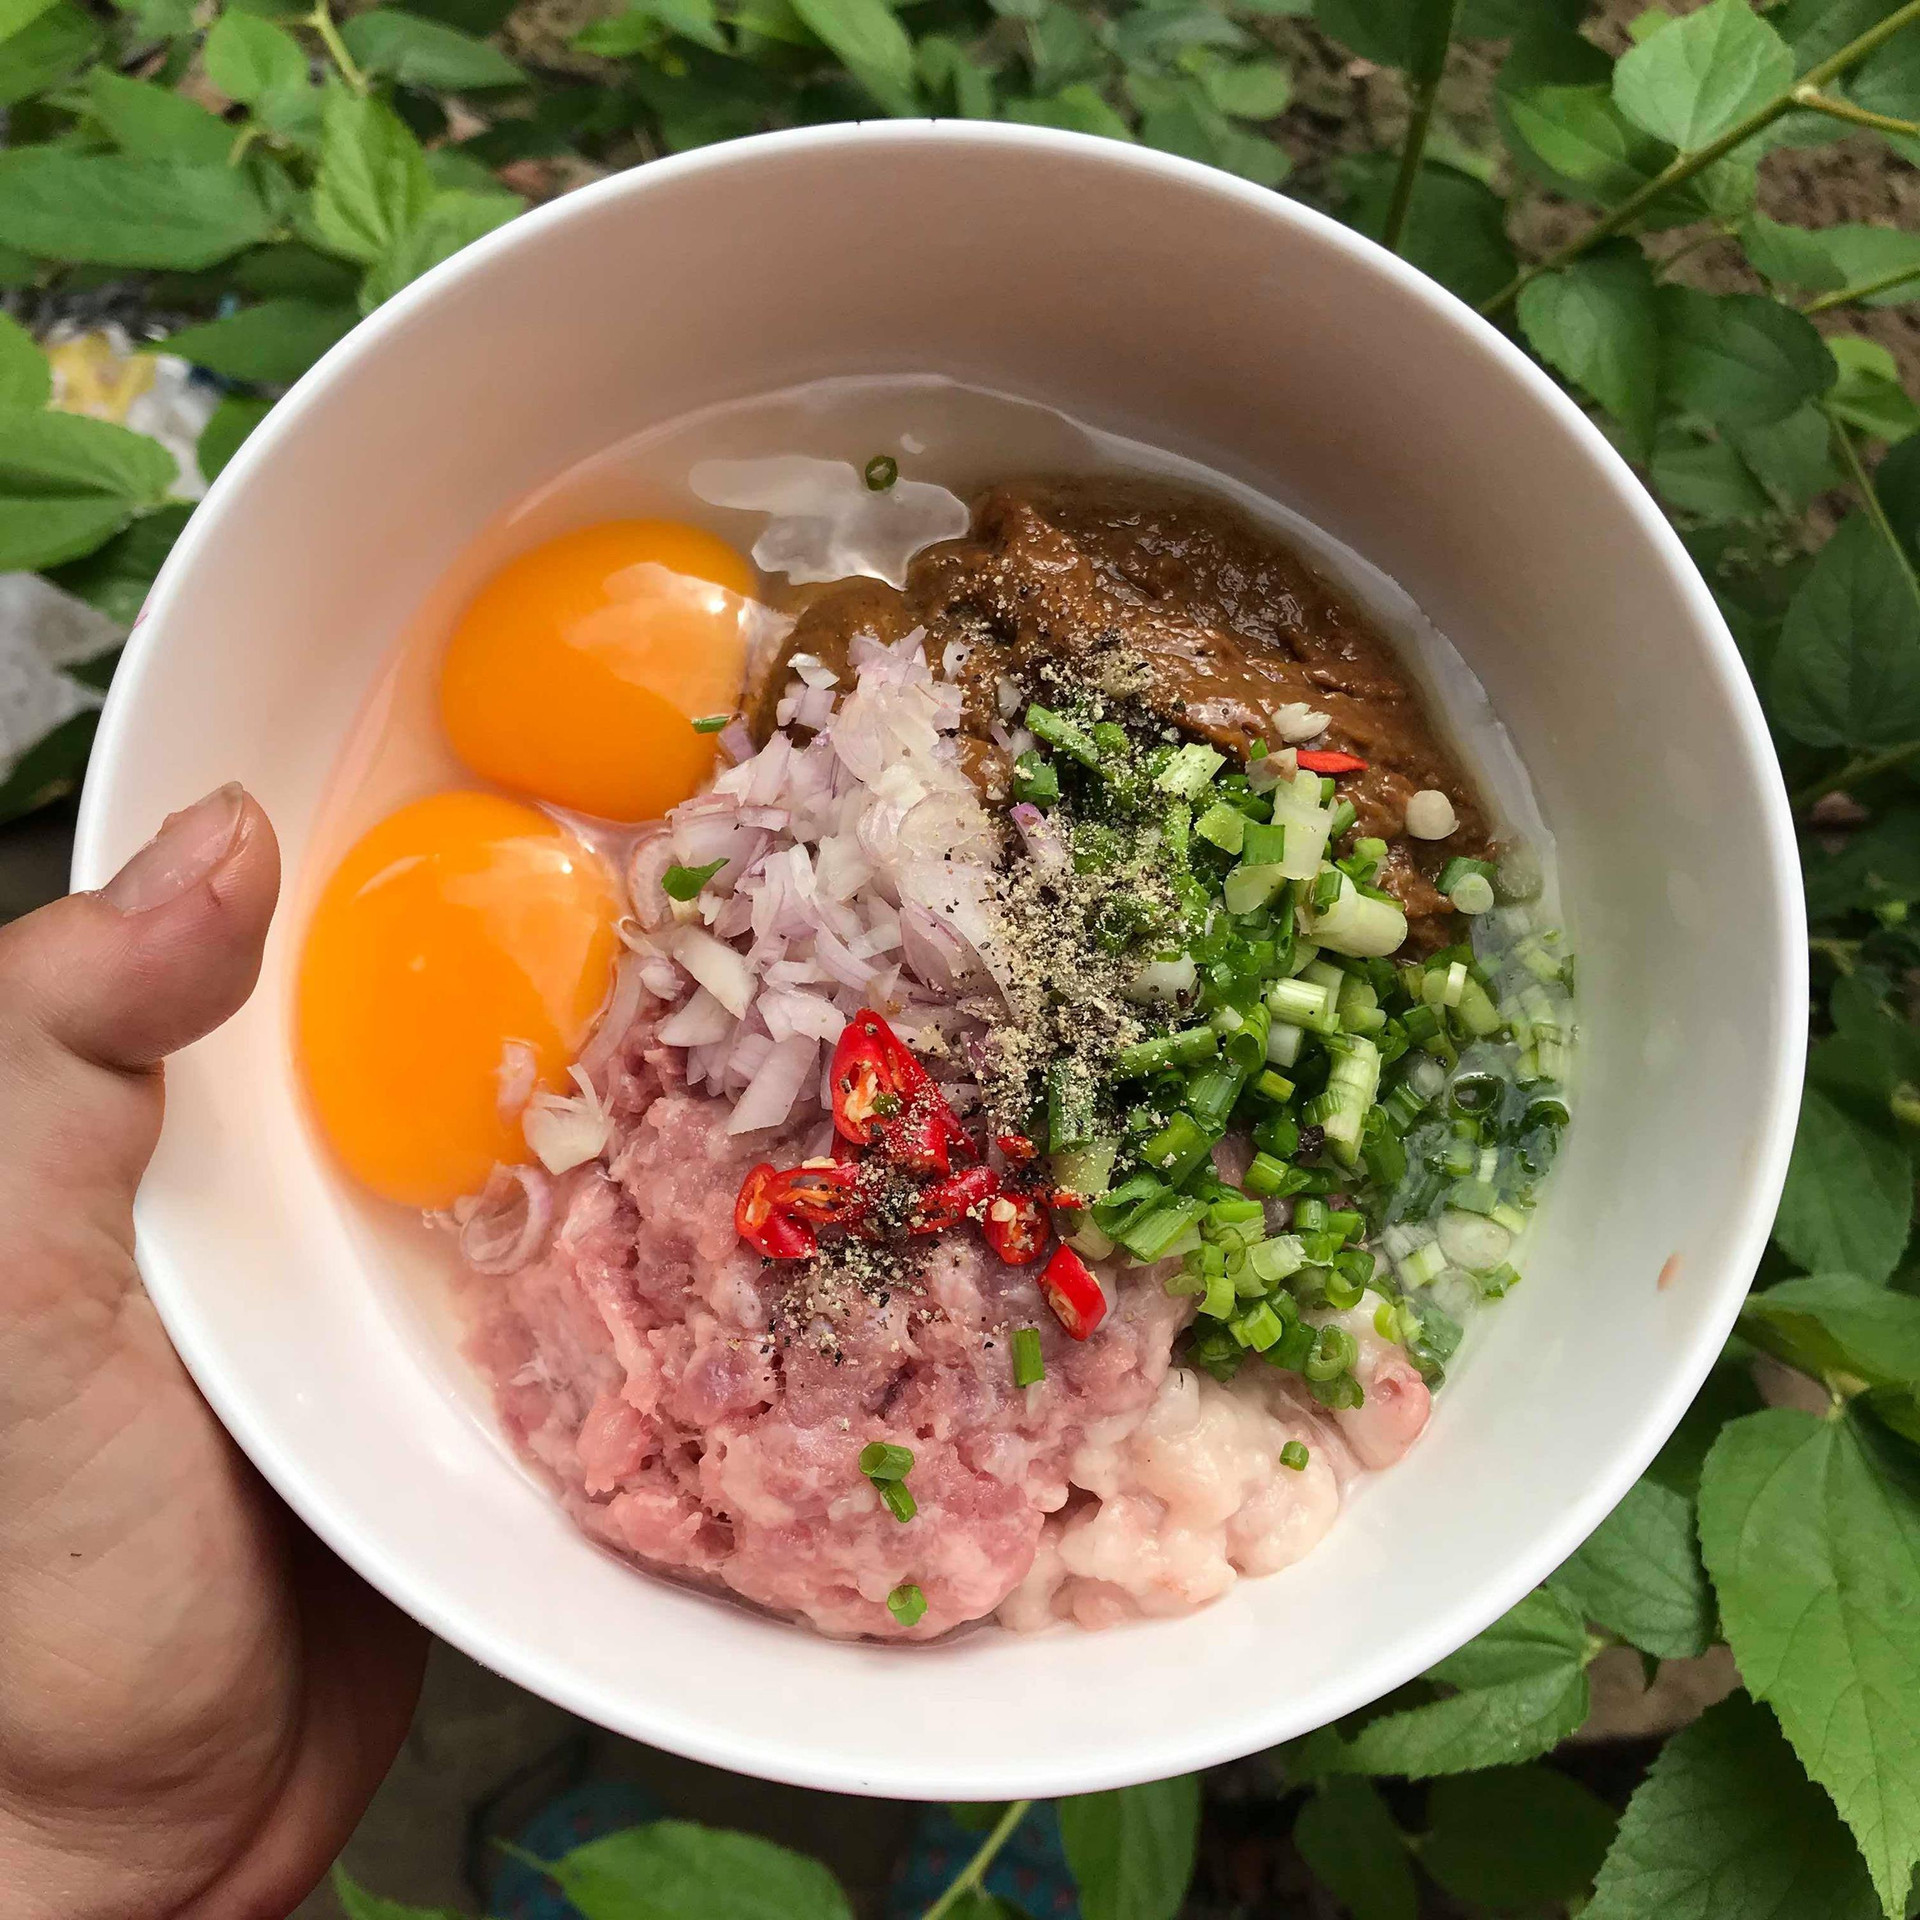 Mắm chưng thịt: Món ăn dung dị nhưng hao cơm trong ký ức tuổi thơ người Nam Bộ - 4